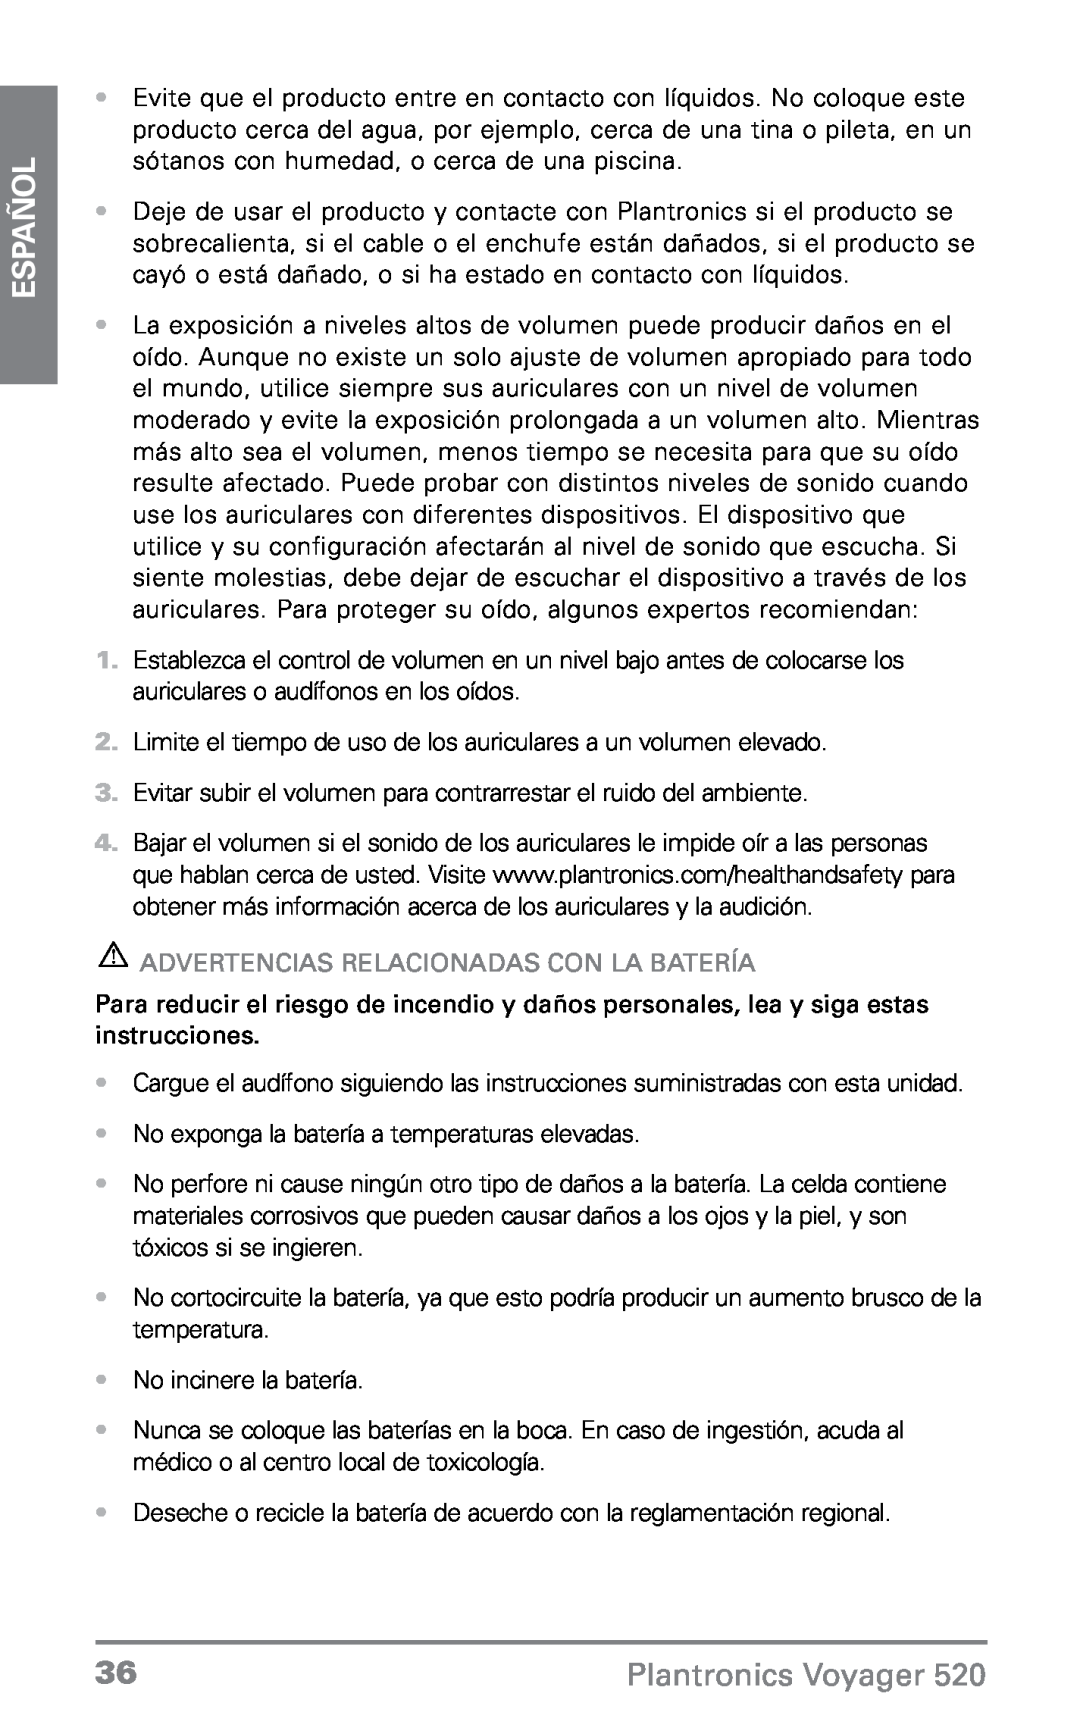 Plantronics 520 manual Advertencias Relacionadas Con La Batería, Español, Plantronics Voyager 